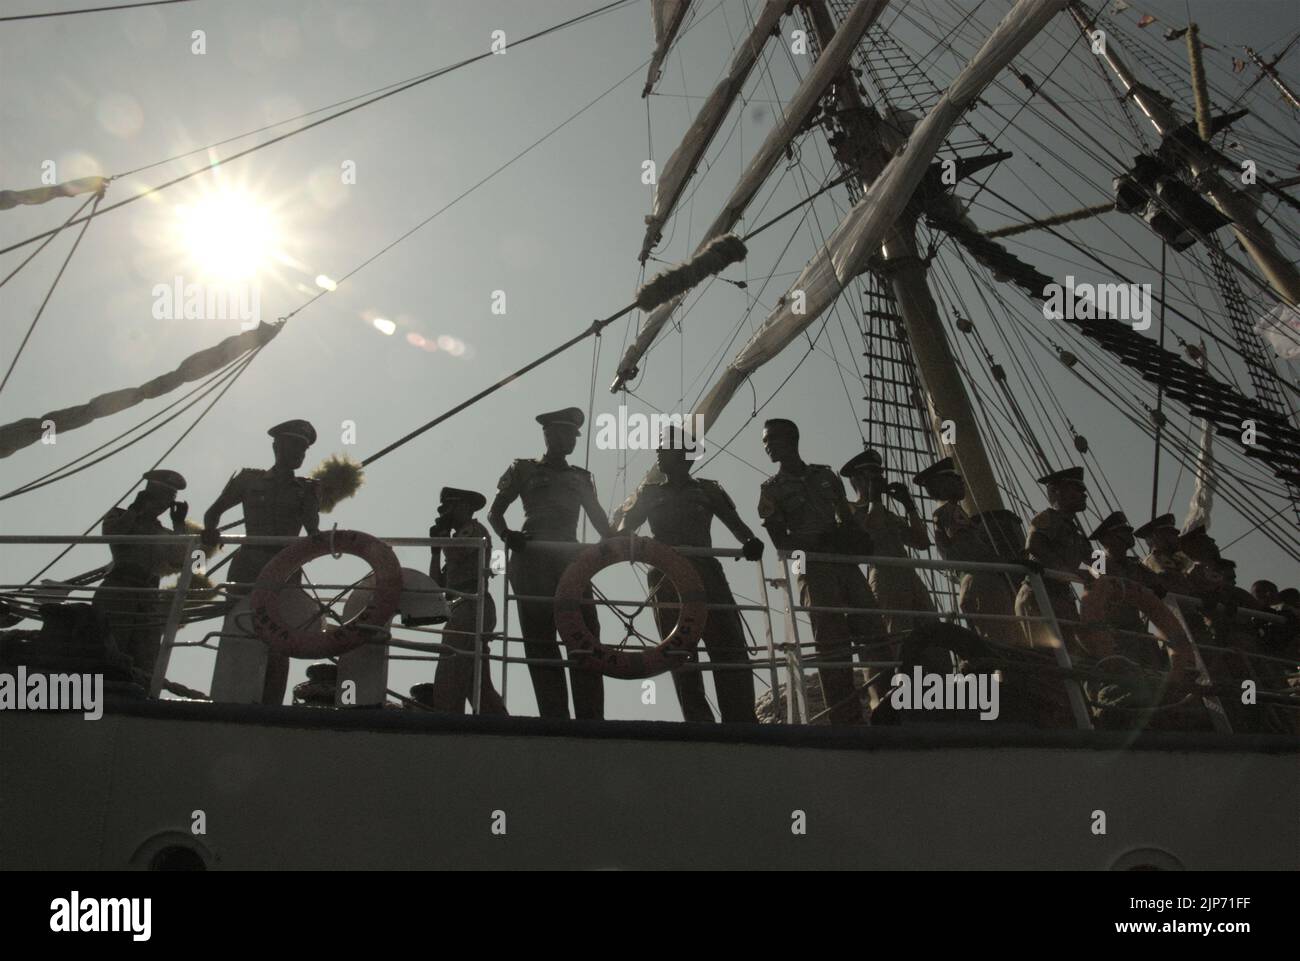 Les officiers de la marine indonésienne sont photographiés sous un soleil éclatant alors qu'ils se trouvent sur le pont de KRI Dewaruci (Dewa Ruci), un grand navire indonésien, après l'ouverture de la goélette de type barquentine pour les visiteurs publics au port de Kolinlamil (port de la marine) à Tanjung Priok, dans le nord de Jakarta, Jakarta, en Indonésie. Banque D'Images